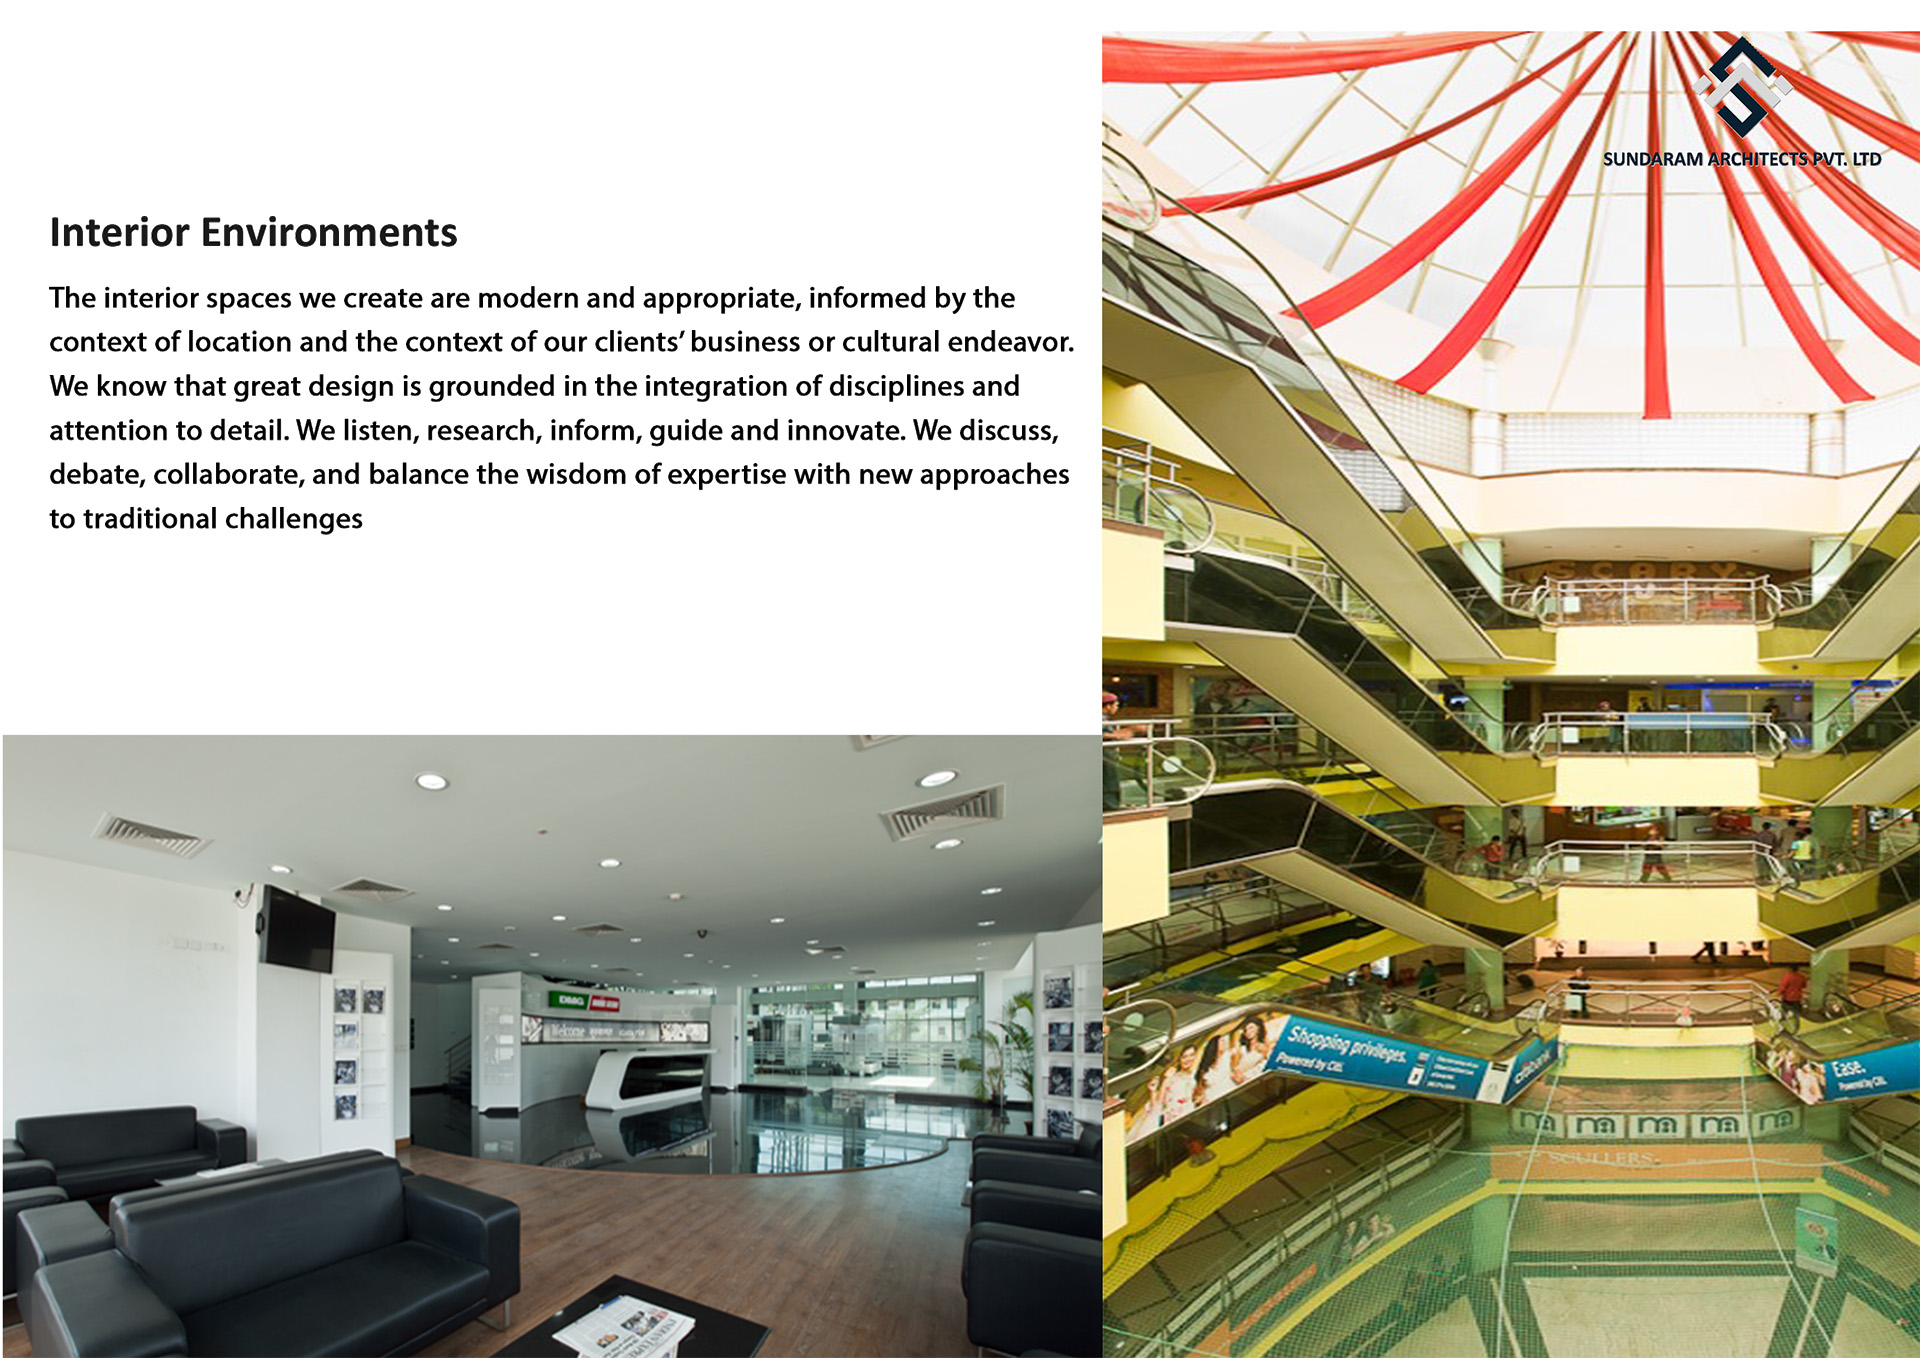 Interiors Services for Sundaram Architects - Best Interiors & Interiors BIM Consultancy Firm in Bangalore, India